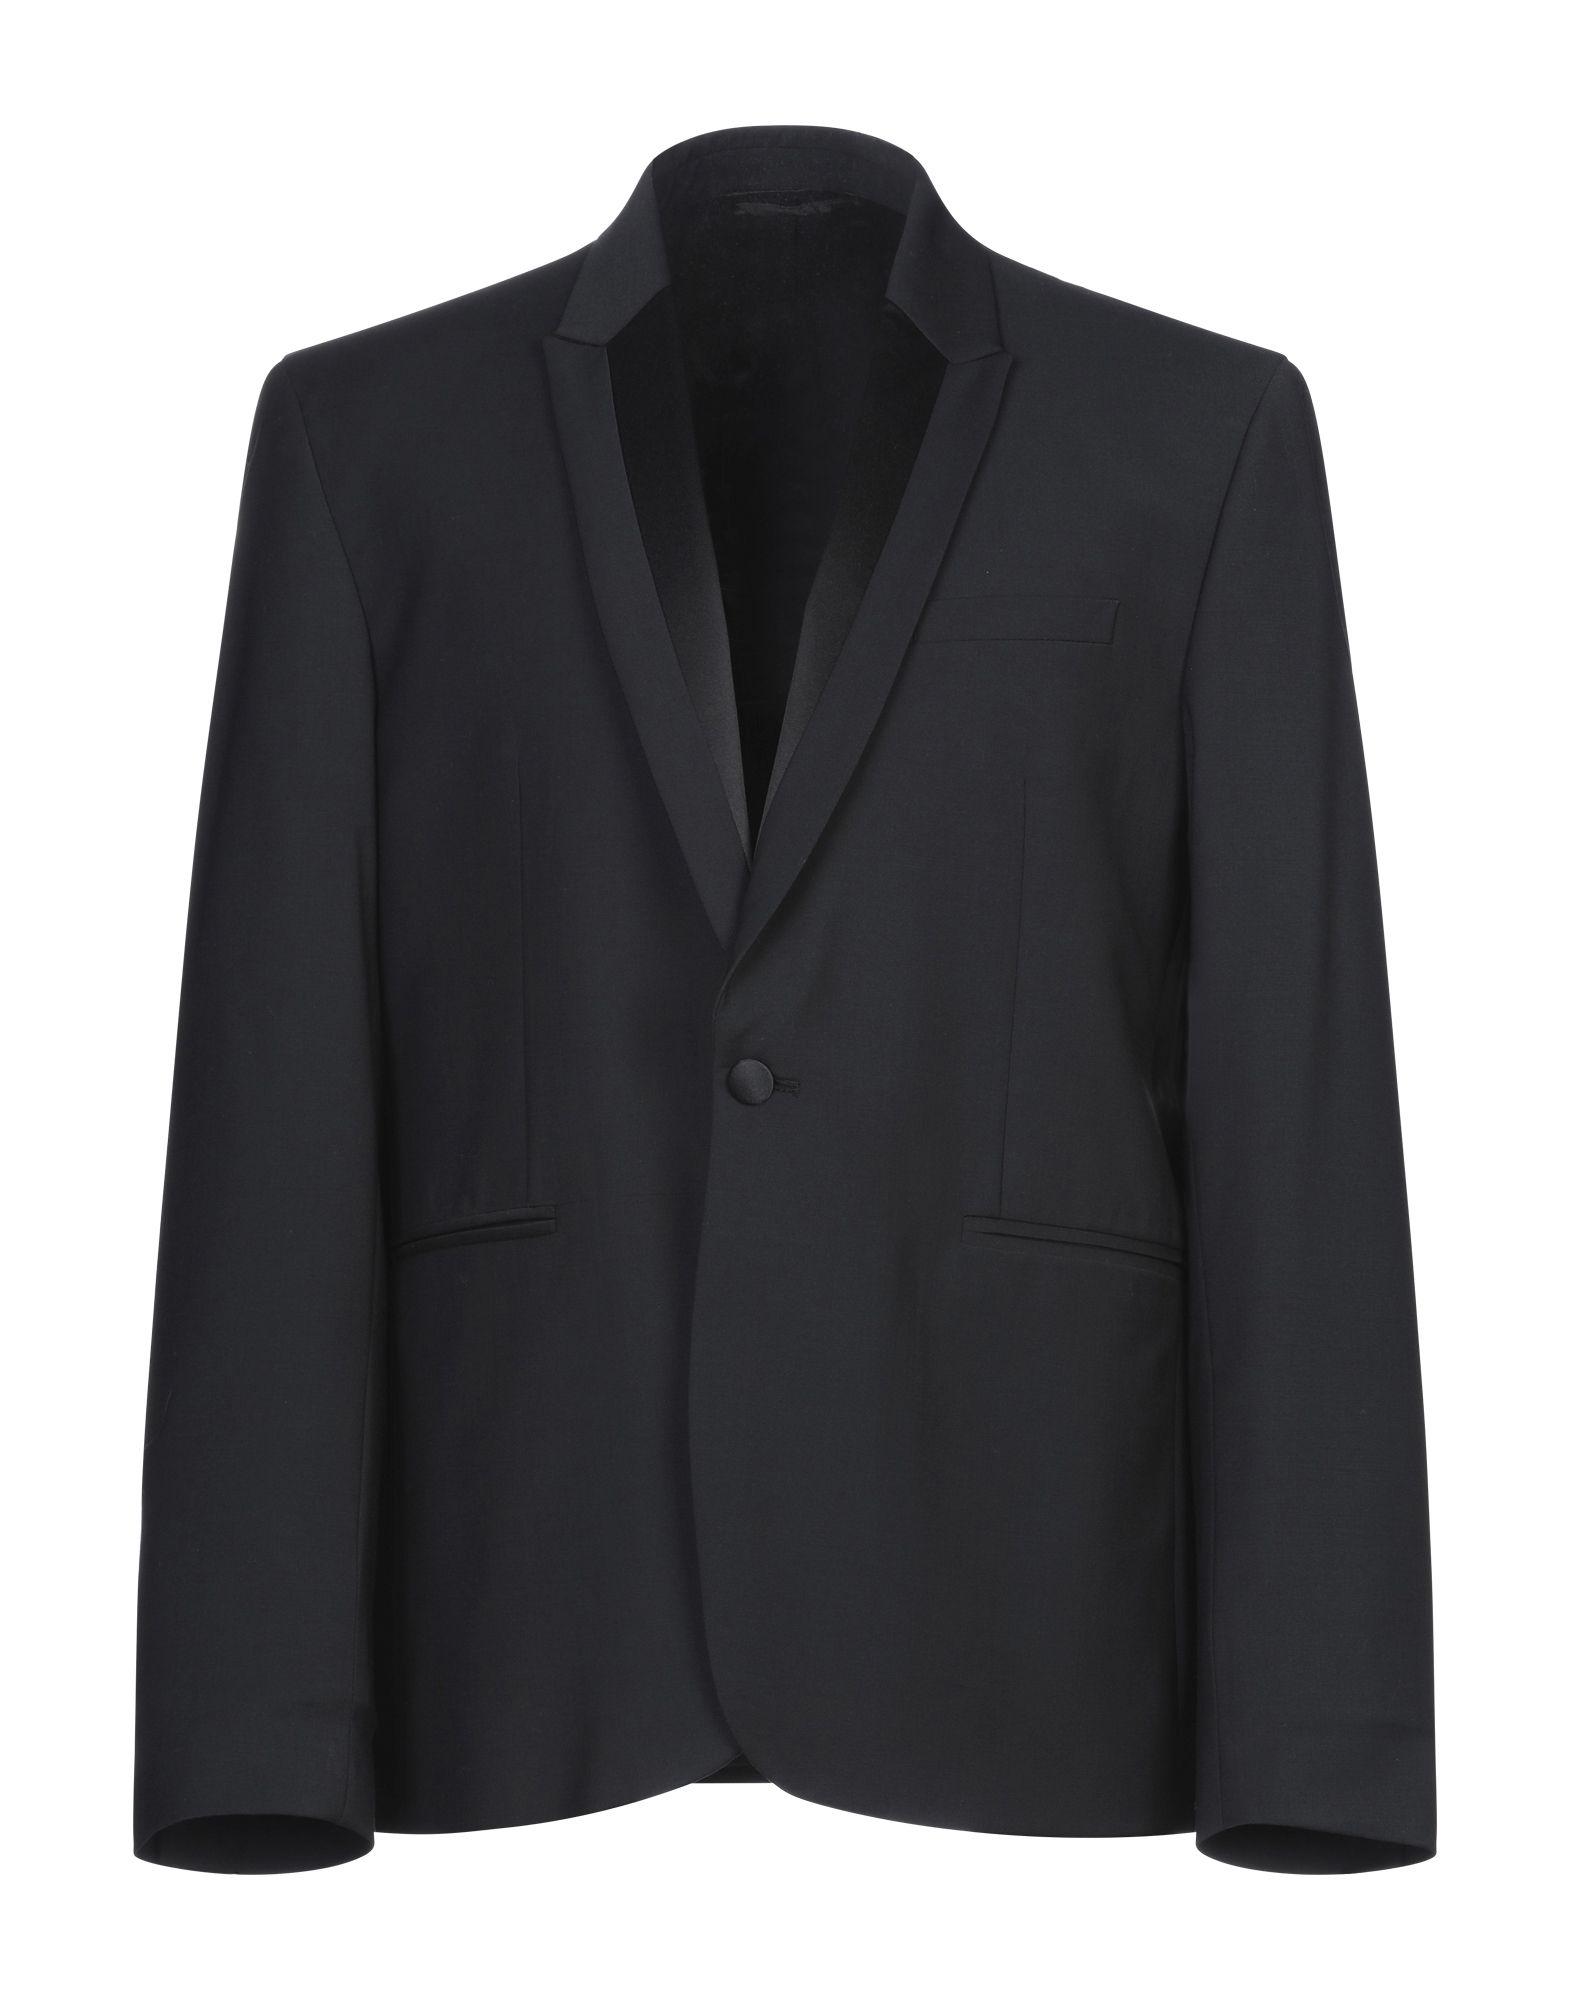 Dondup Suit Jacket in Black for Men - Lyst